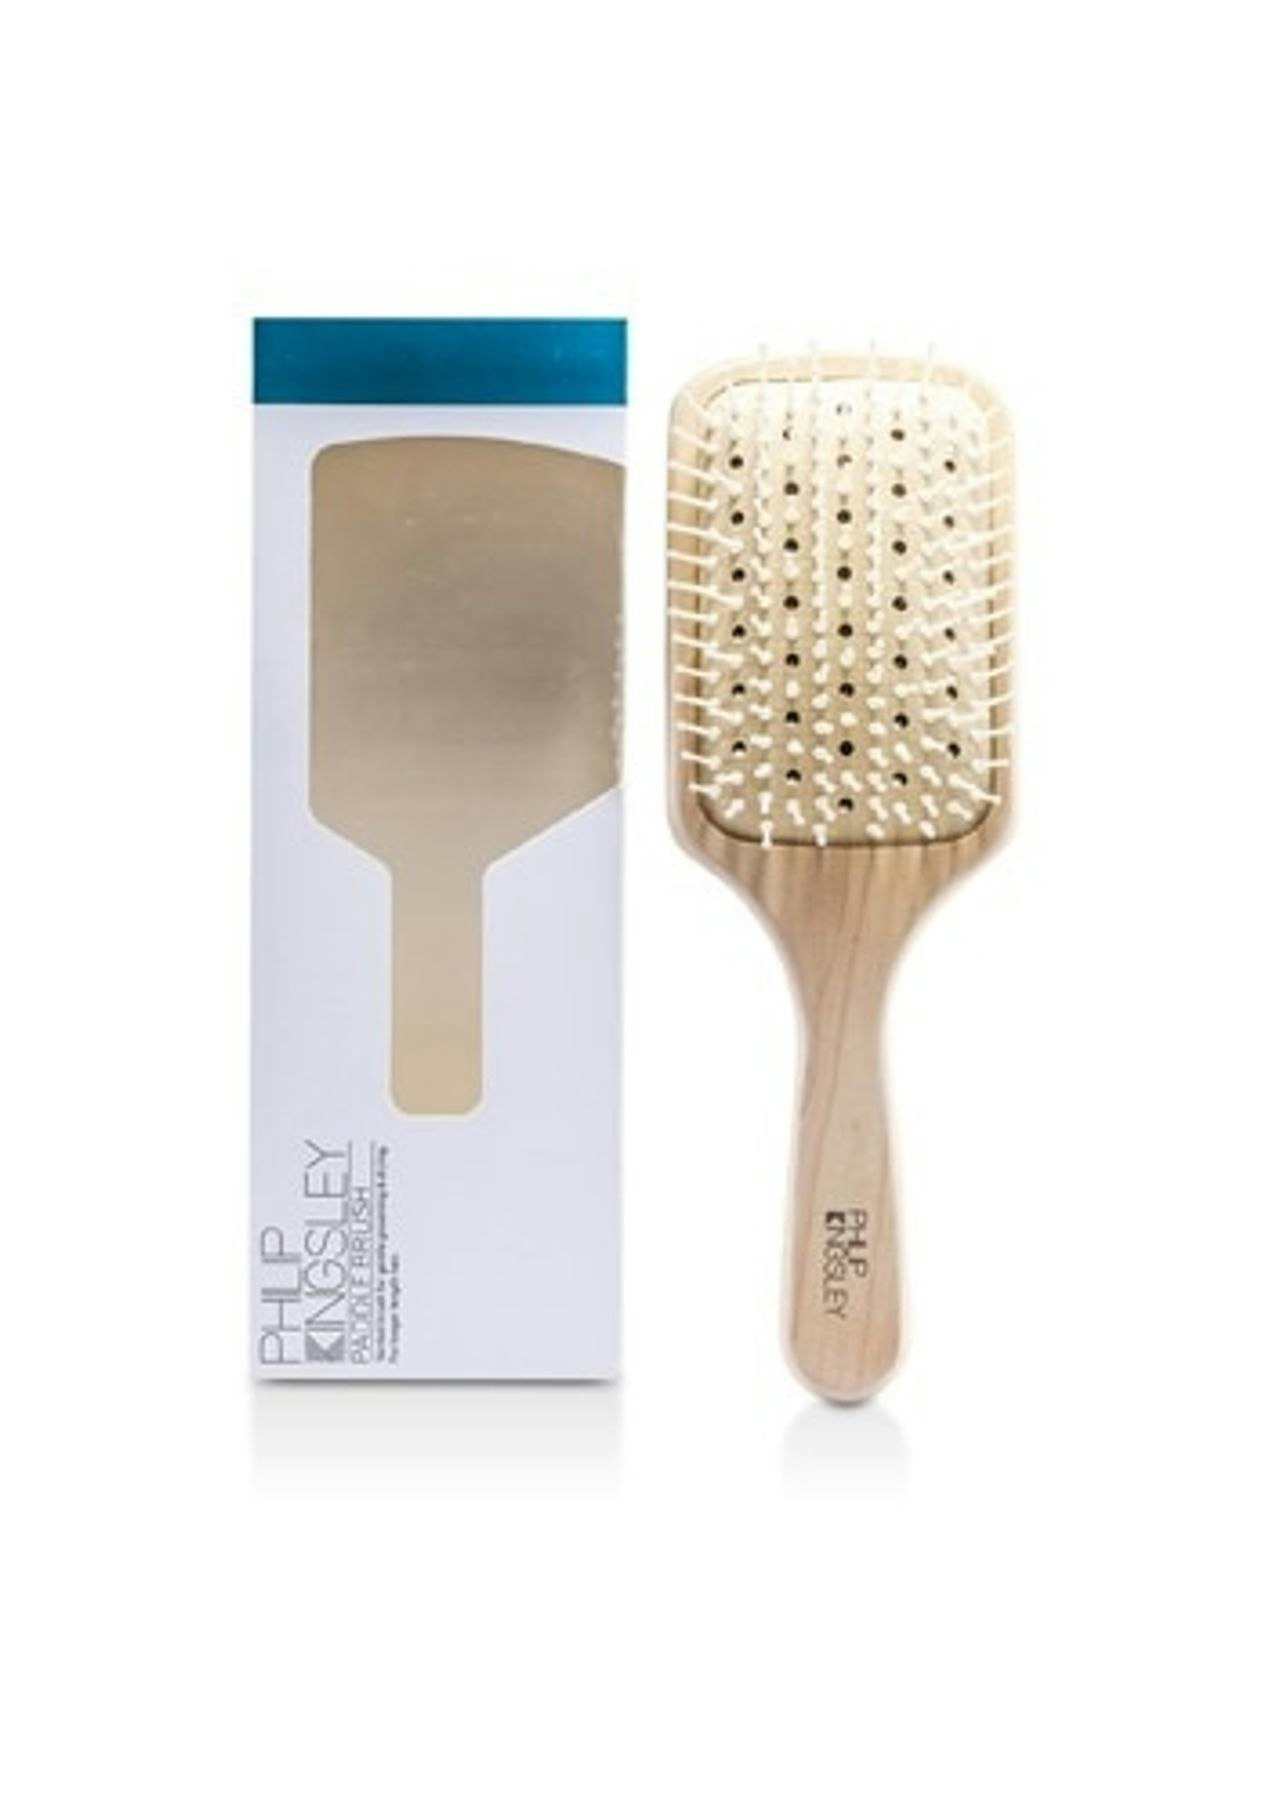 Philip Kingsley Paddle Brush (For Longer Length Hair) 1pc - Onceit